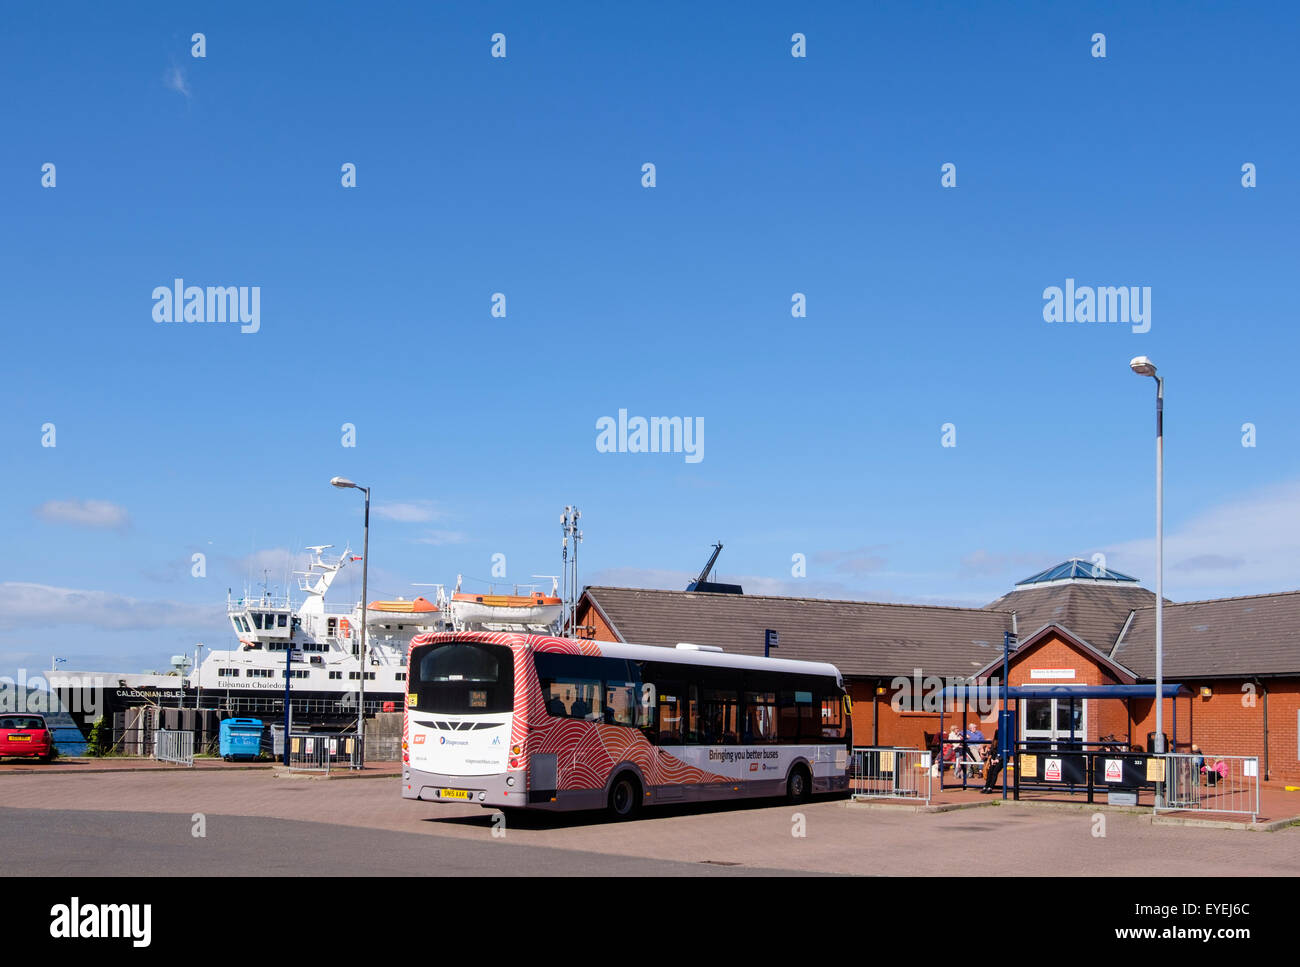 Stagecoach-Bus in der Busbahnhof vom Fährhafen in Brodick, Isle of Arran, North Ayrshire, Western Isles, Schottland, UK, Großbritannien Stockfoto